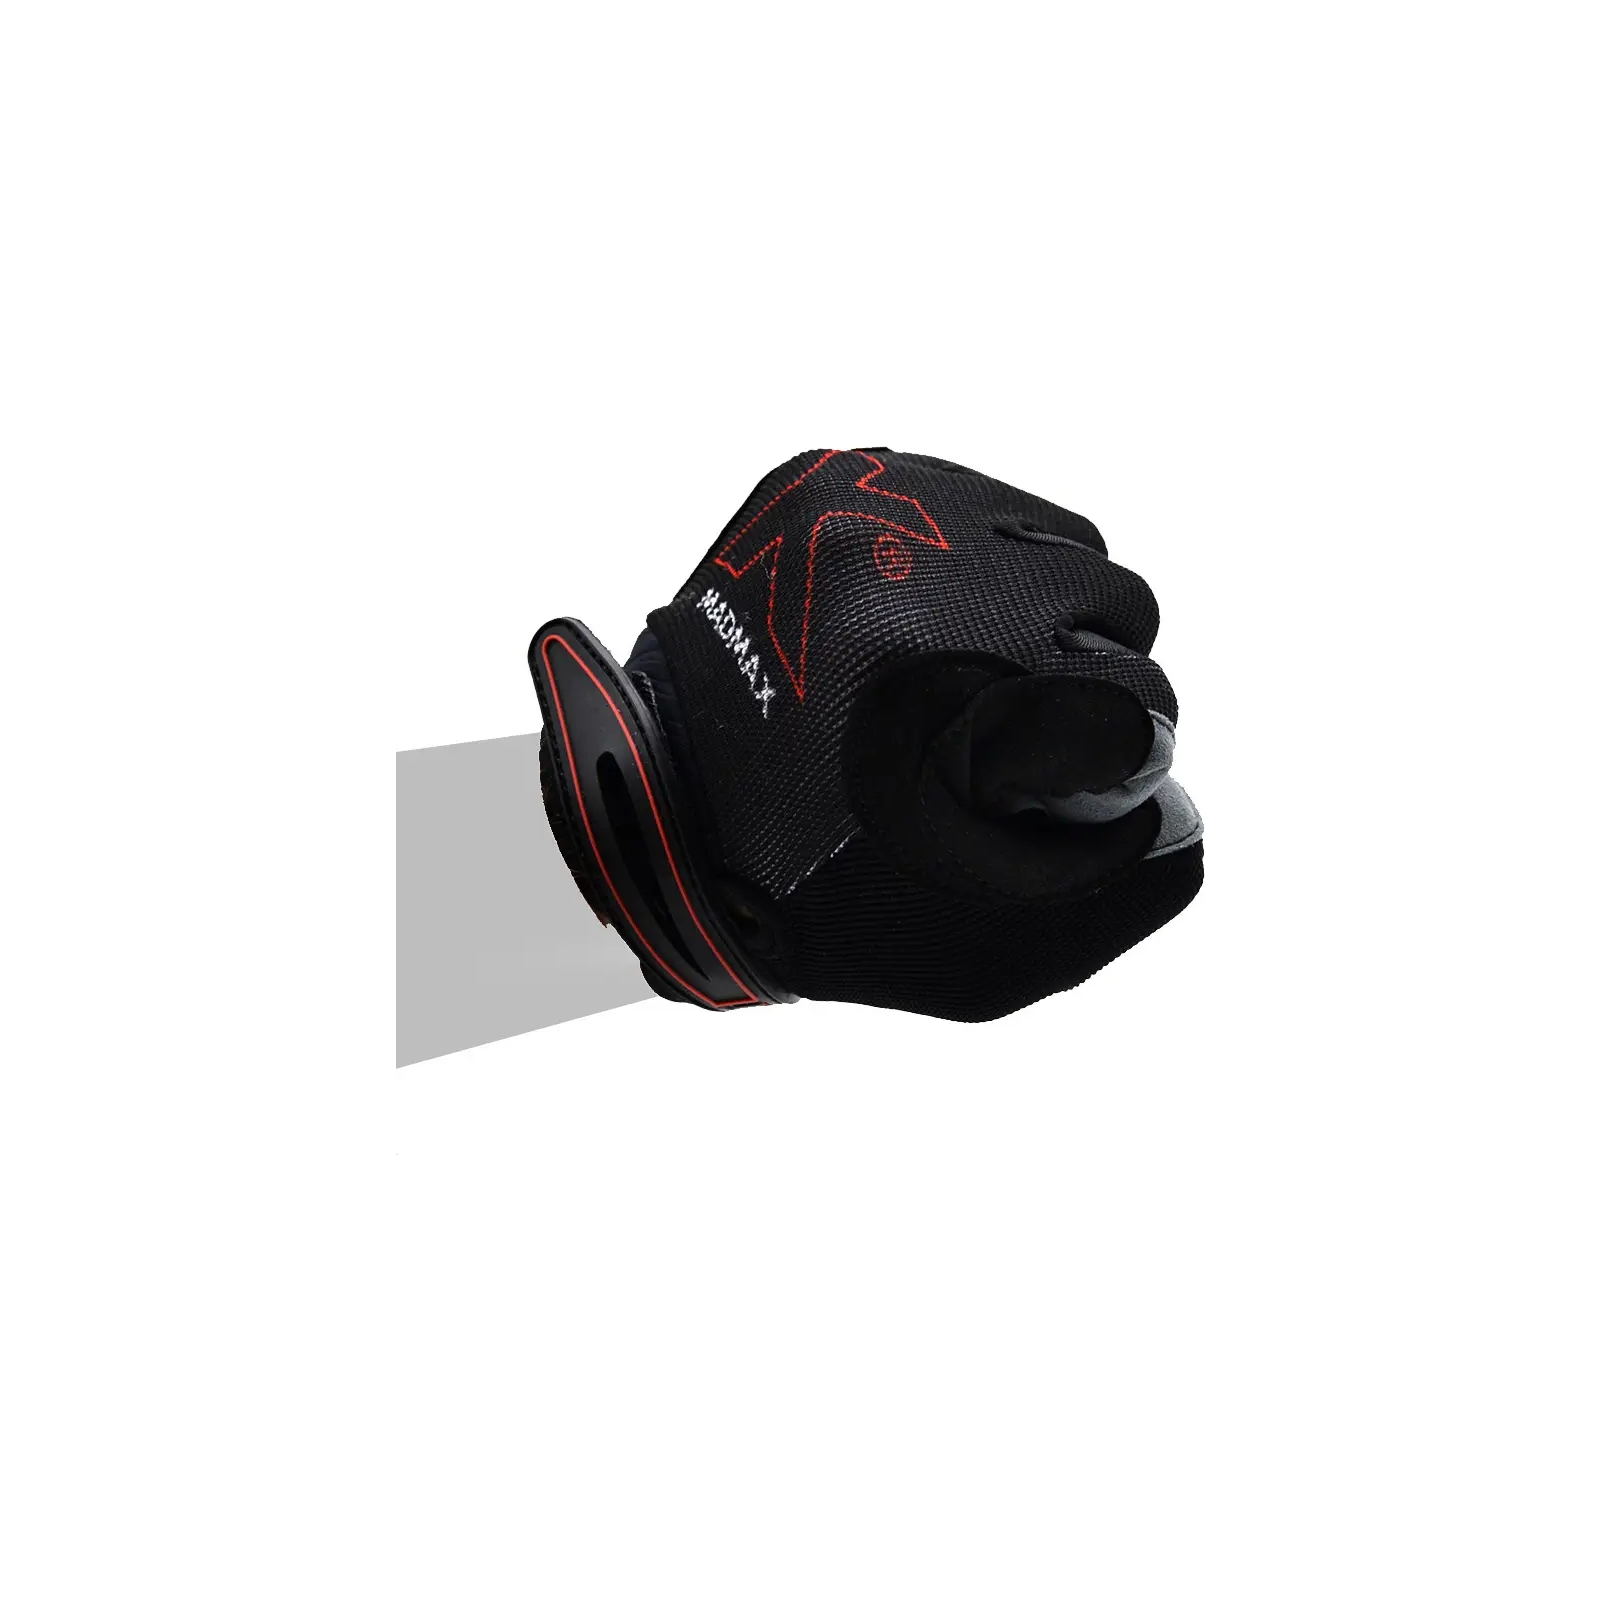 Рукавички для фітнесу MadMax MXG-103 X Gloves Black/Grey L (MXG-103-BLK_L) зображення 10